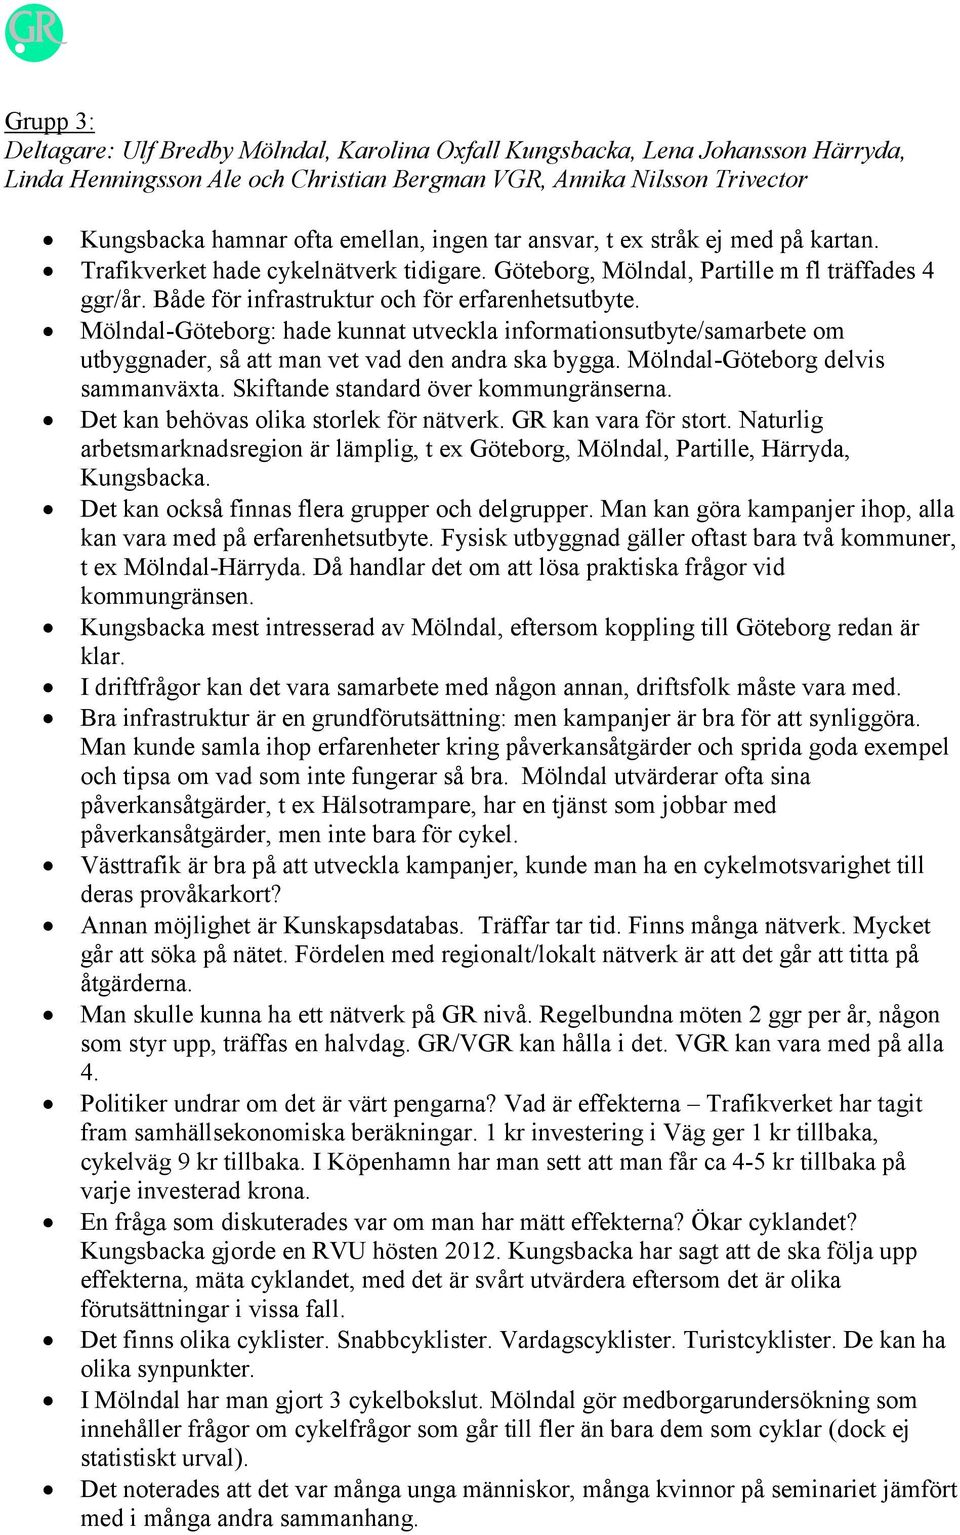 Mölndal-Göteborg: hade kunnat utveckla informationsutbyte/samarbete om utbyggnader, så att man vet vad den andra ska bygga. Mölndal-Göteborg delvis sammanväxta.